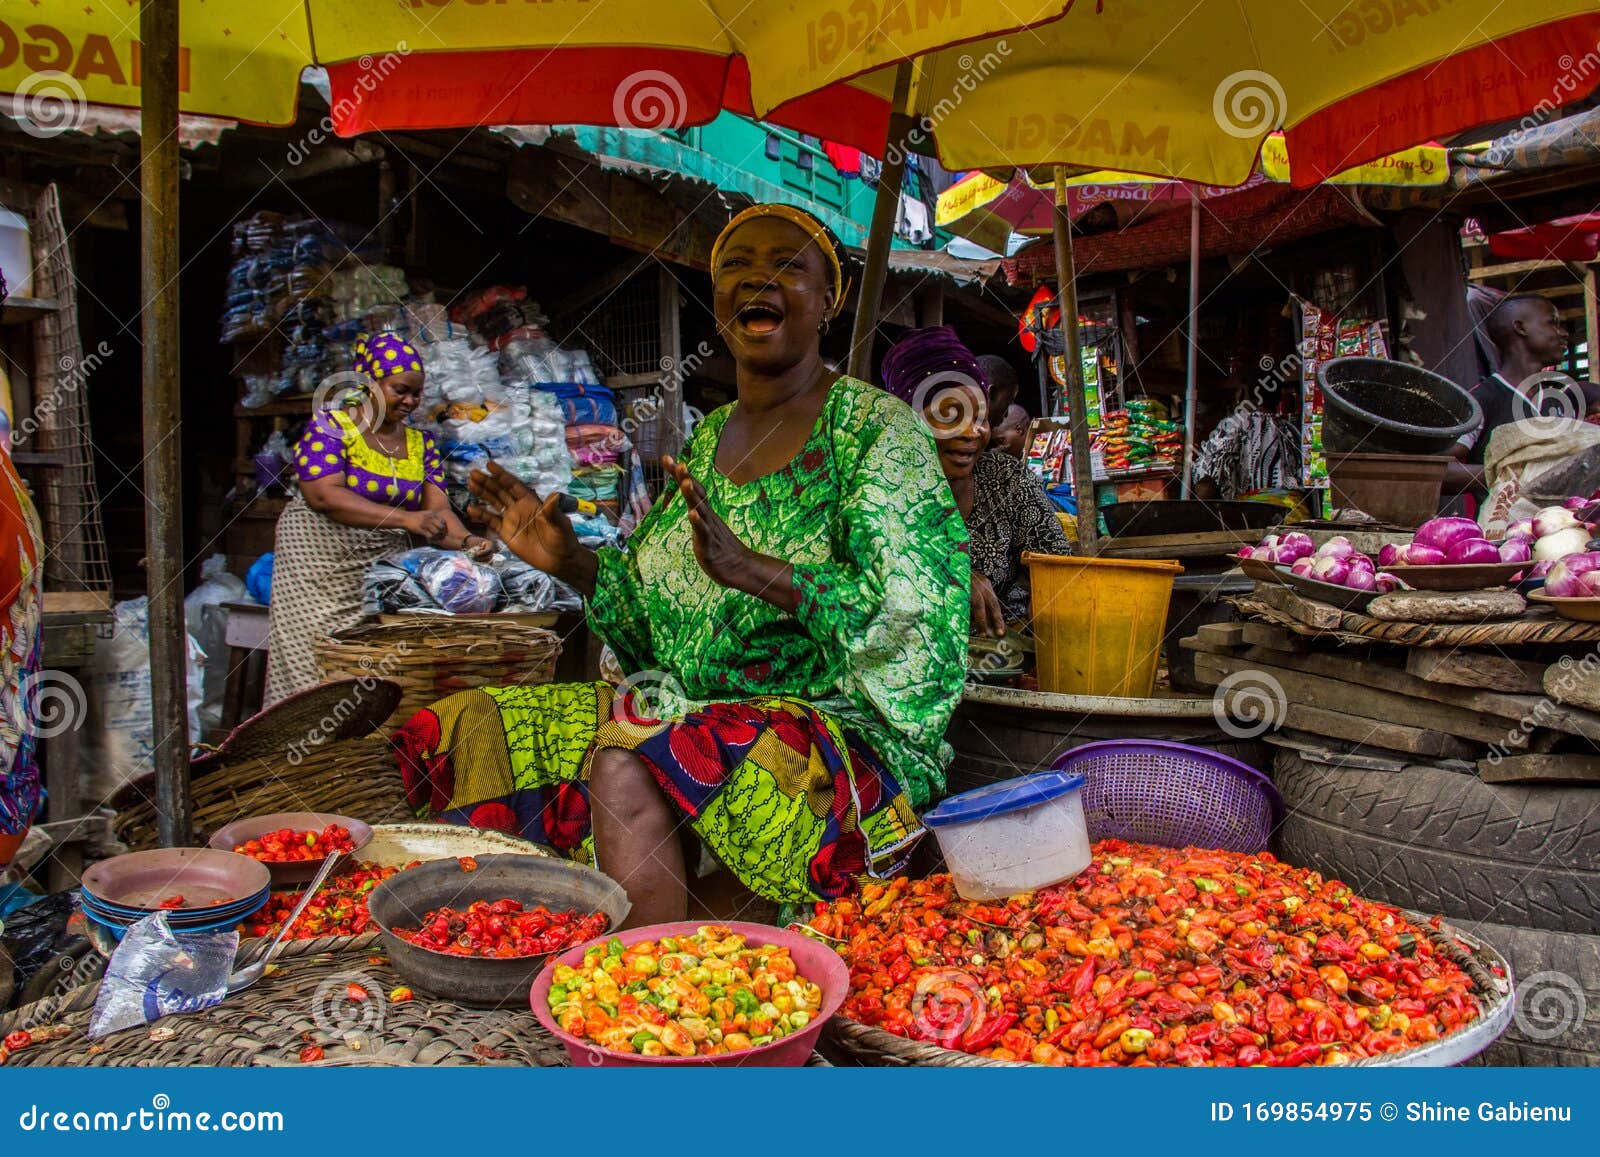 Das Marktgeschehen in einem beliebten afrikanischen Markt. Foto von einer Frau, die Pfeffer, am Markt der Meile 12 in Lagos-Staat, Nigeria, Afrika verkauft.